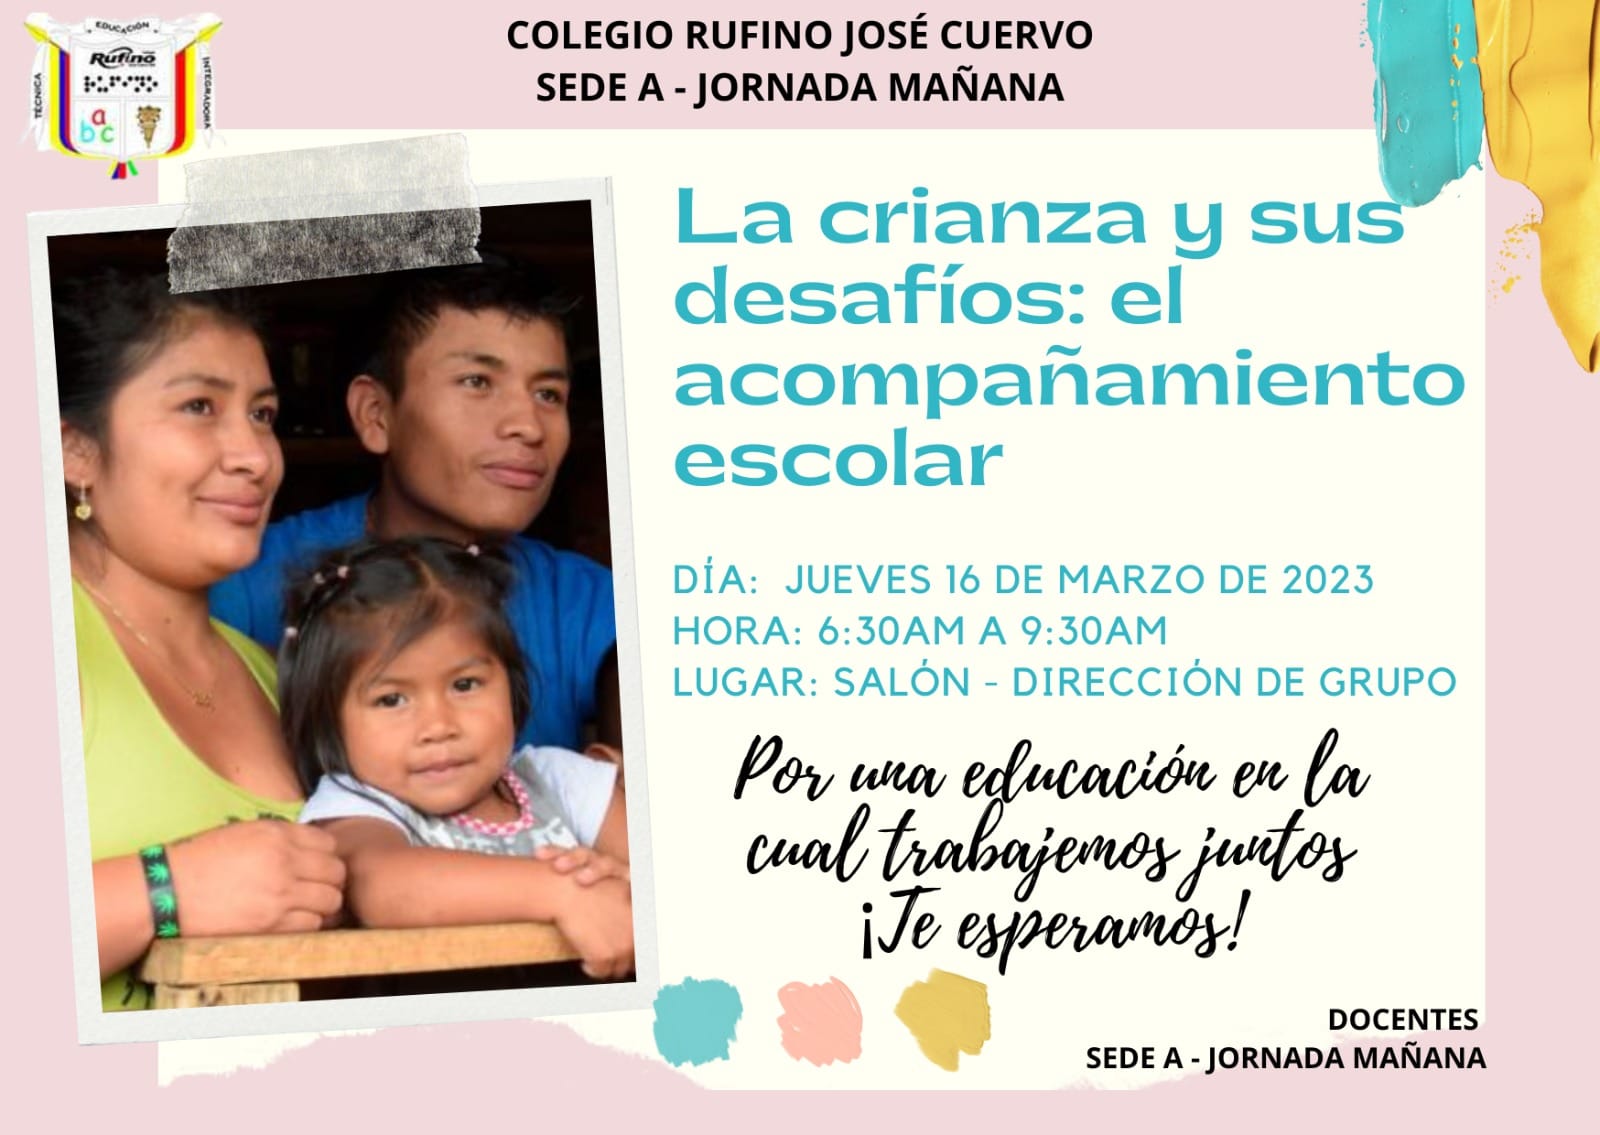 Invitación a evento "La crianza y sus desafios", Colegio Rufino Jose Cuervo sede A JM, jueves 16 de marzo de 2023 6:30 a 9:30 am